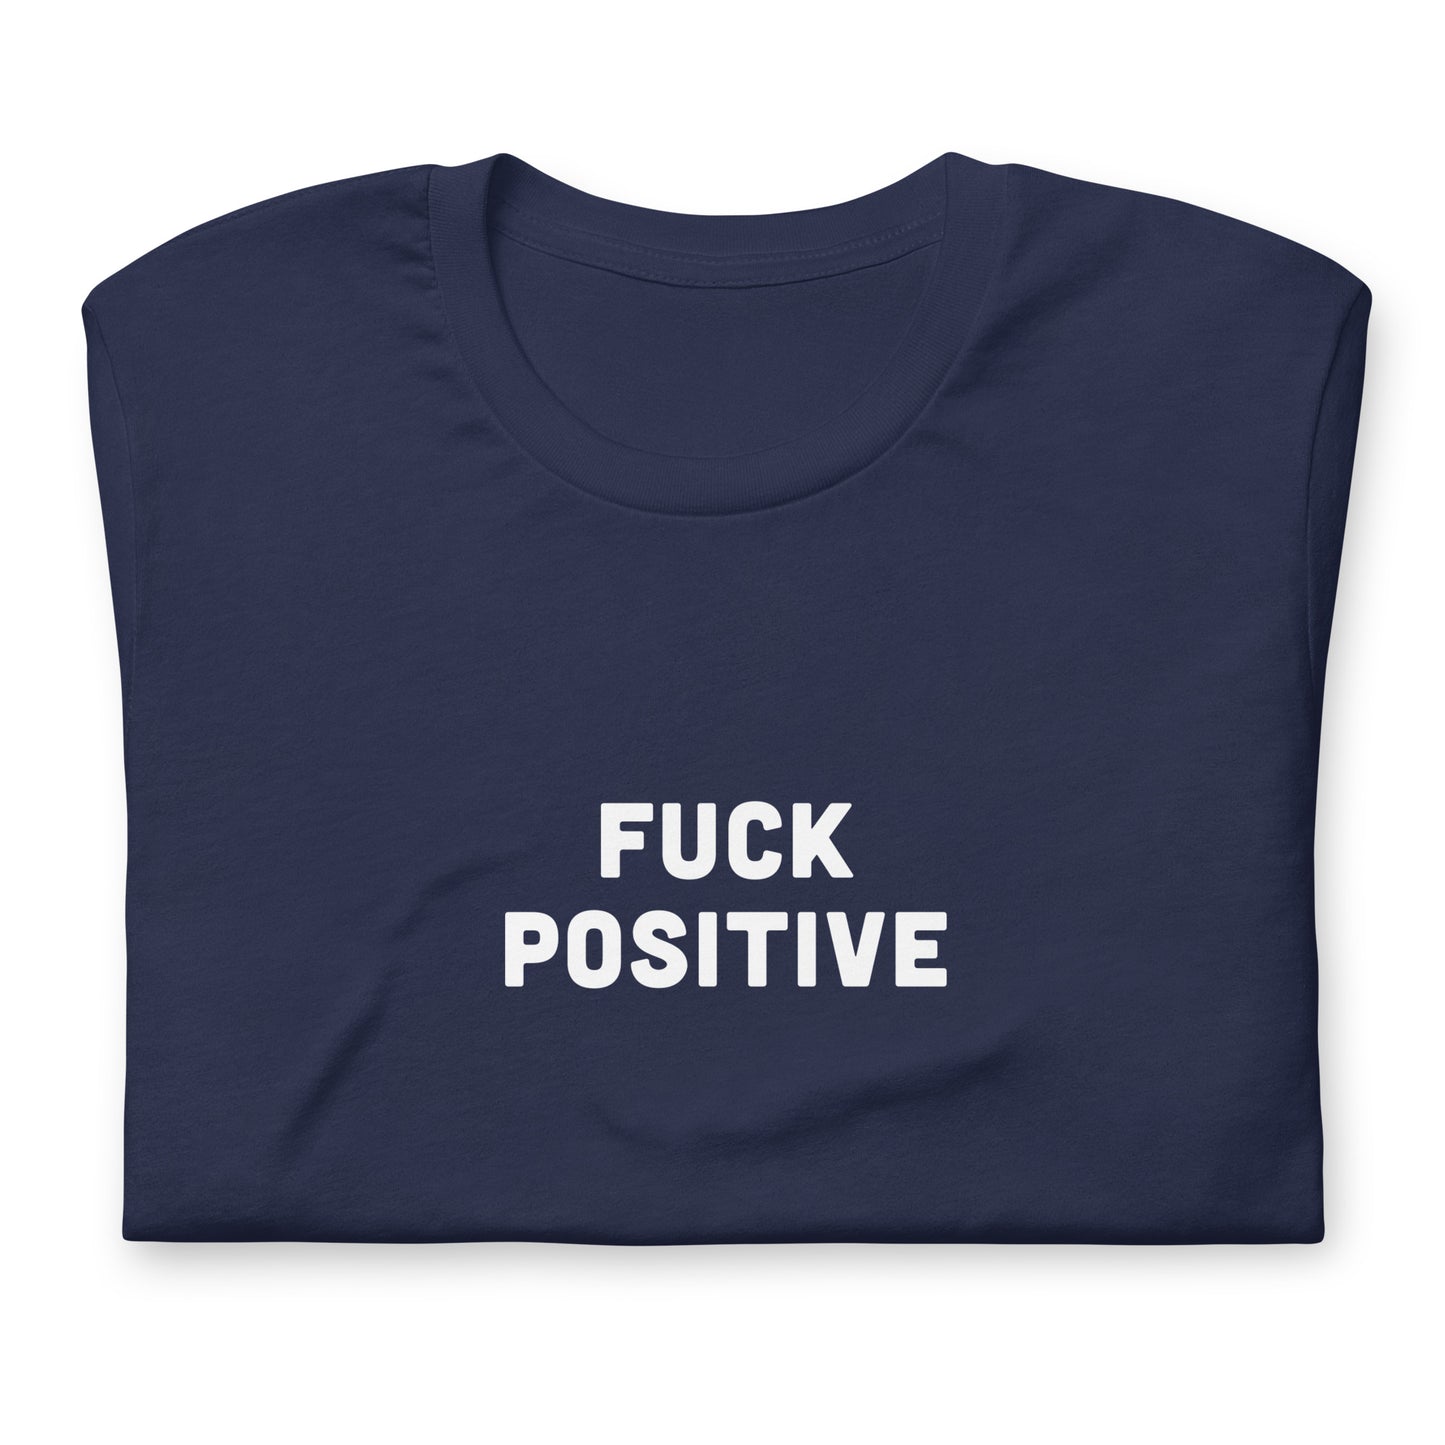 Fuck Positive T-Shirt Size L Color Black